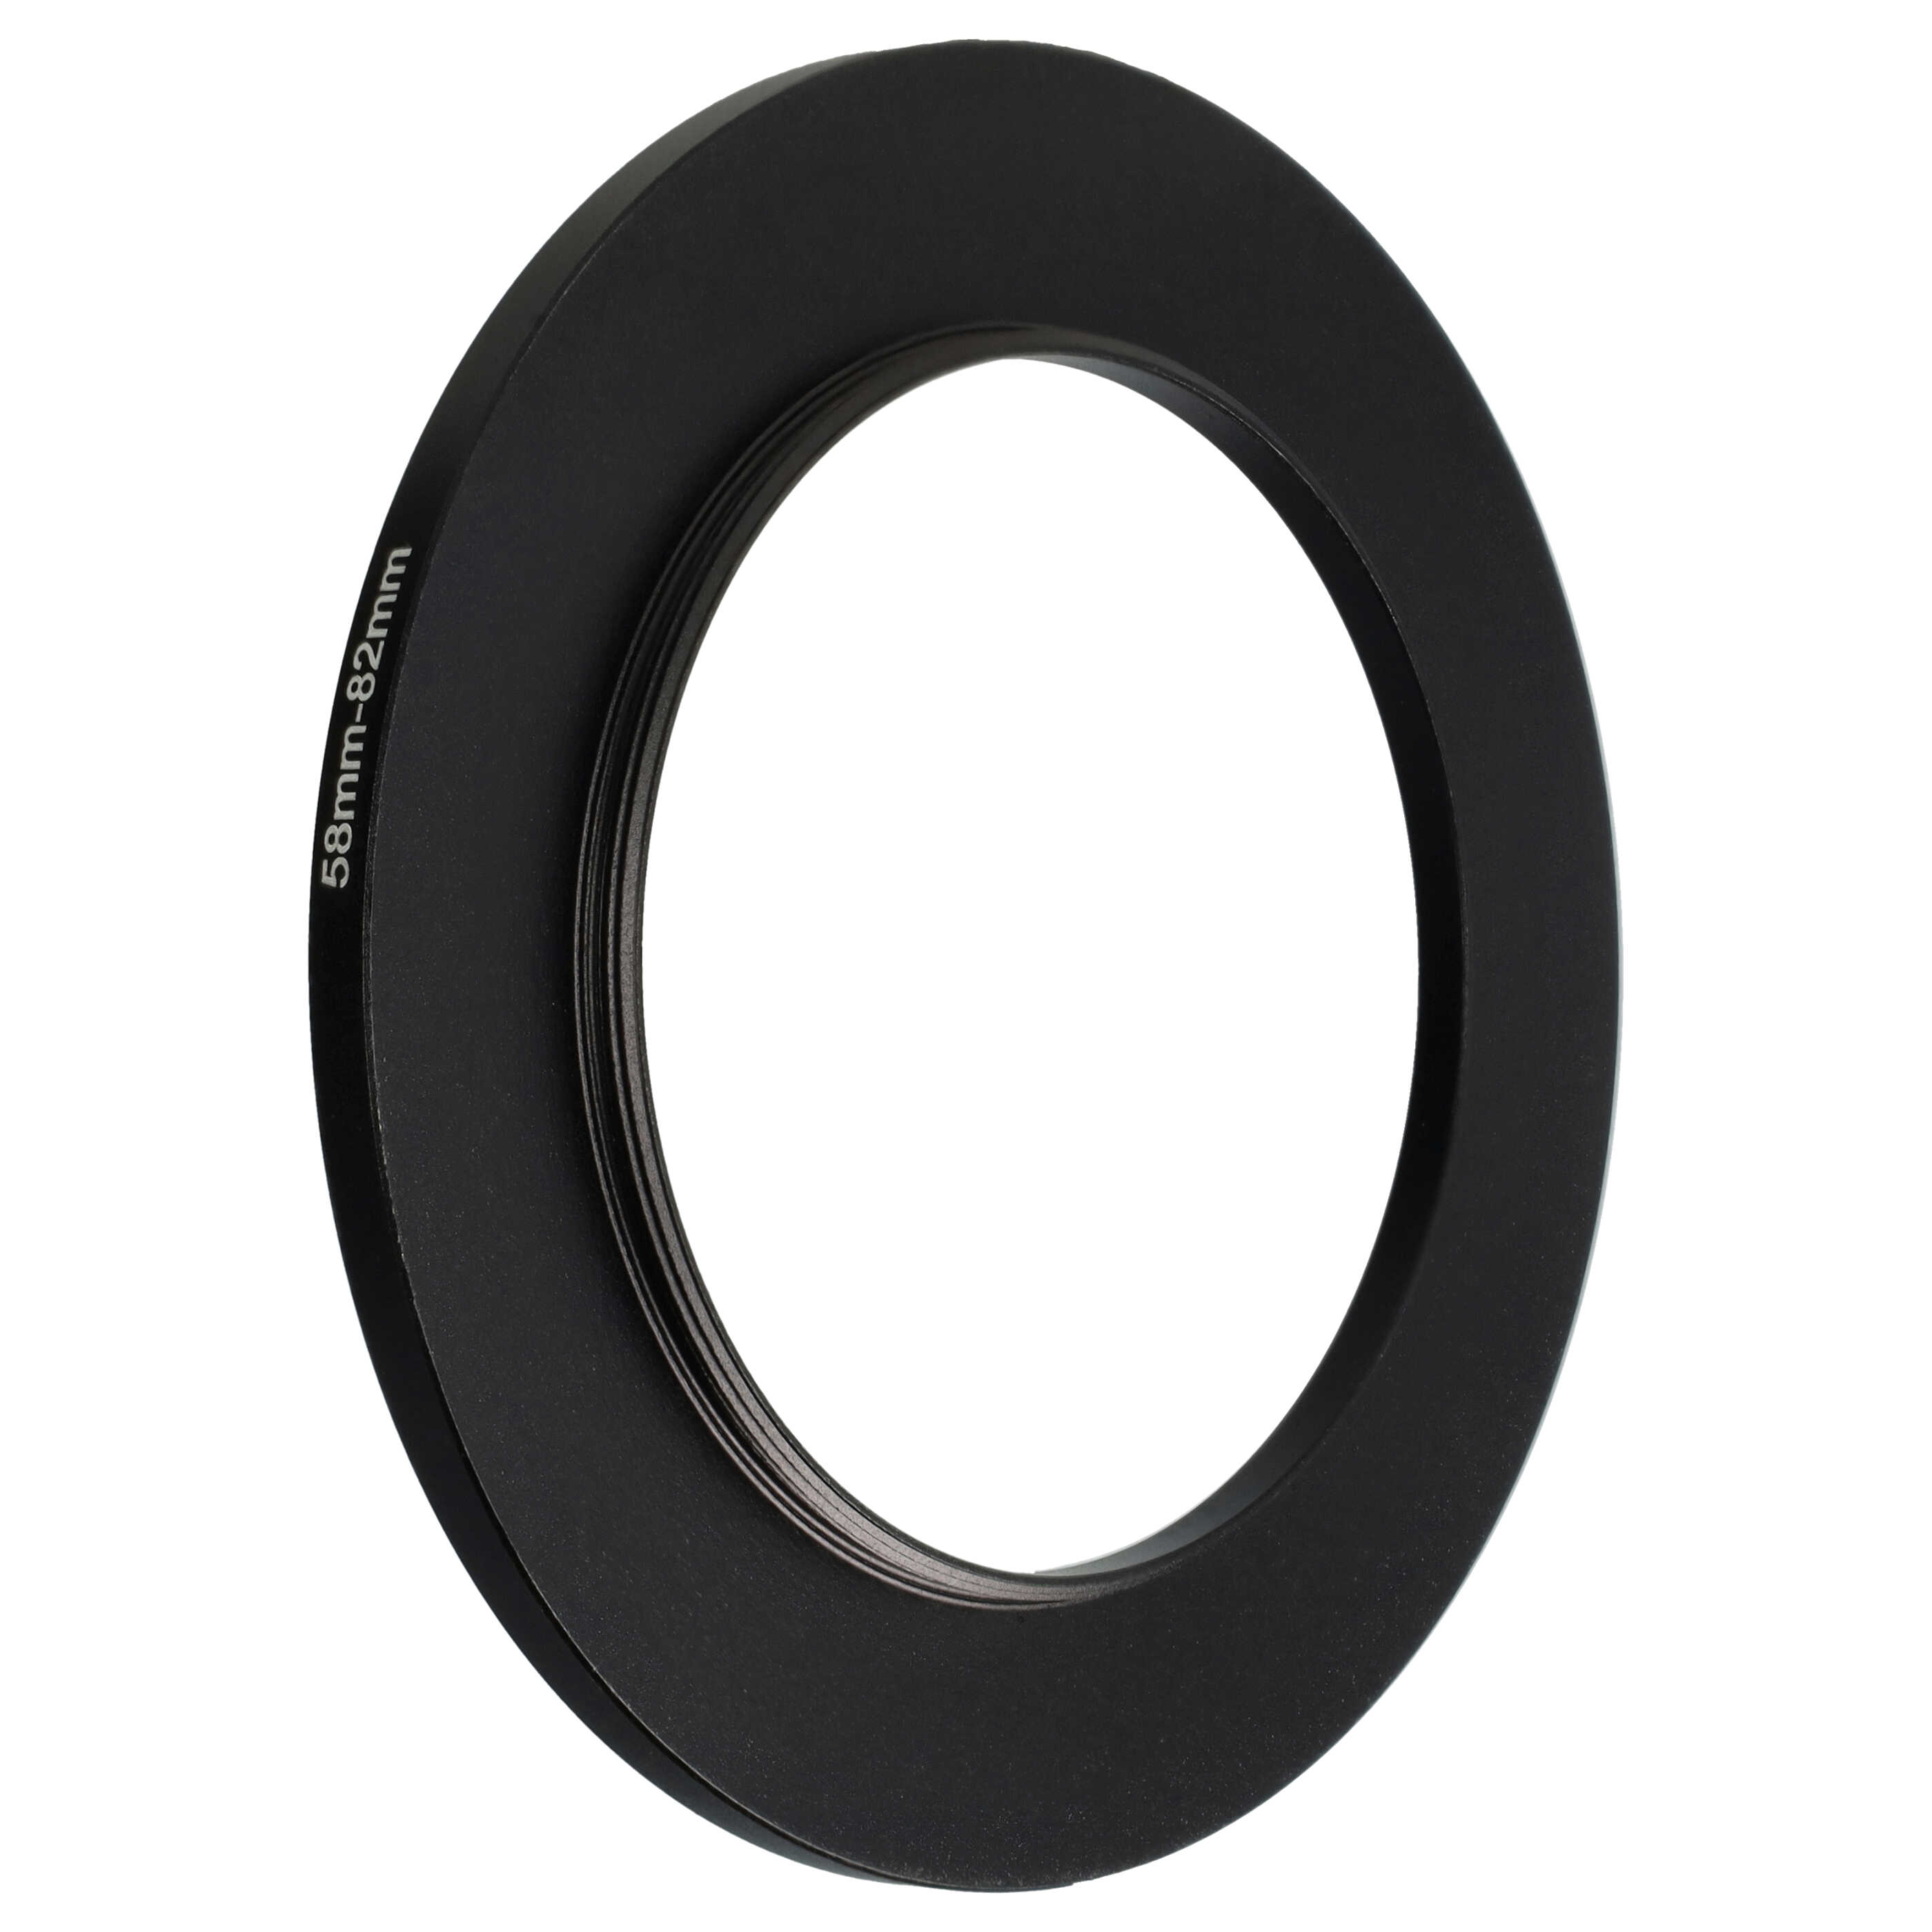 Step-Up-Ring Adapter 58 mm auf 82 mm passend für diverse Kamera-Objektive - Filteradapter